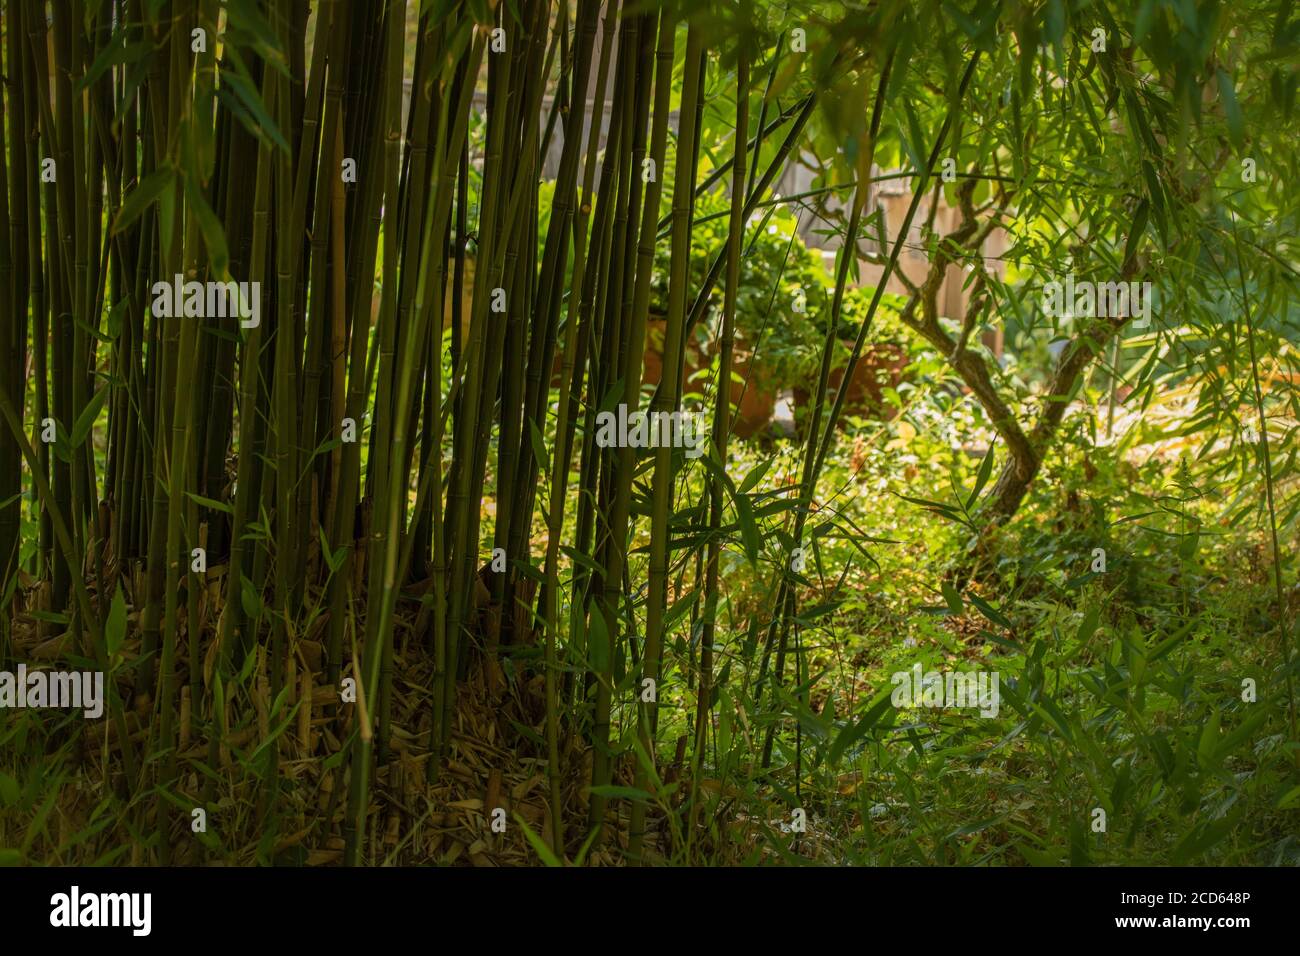 Phyllostachys purata (bambù inglese)formare uno schermo retroilluminato naturale in un giardino soleggiato impostazione Foto Stock